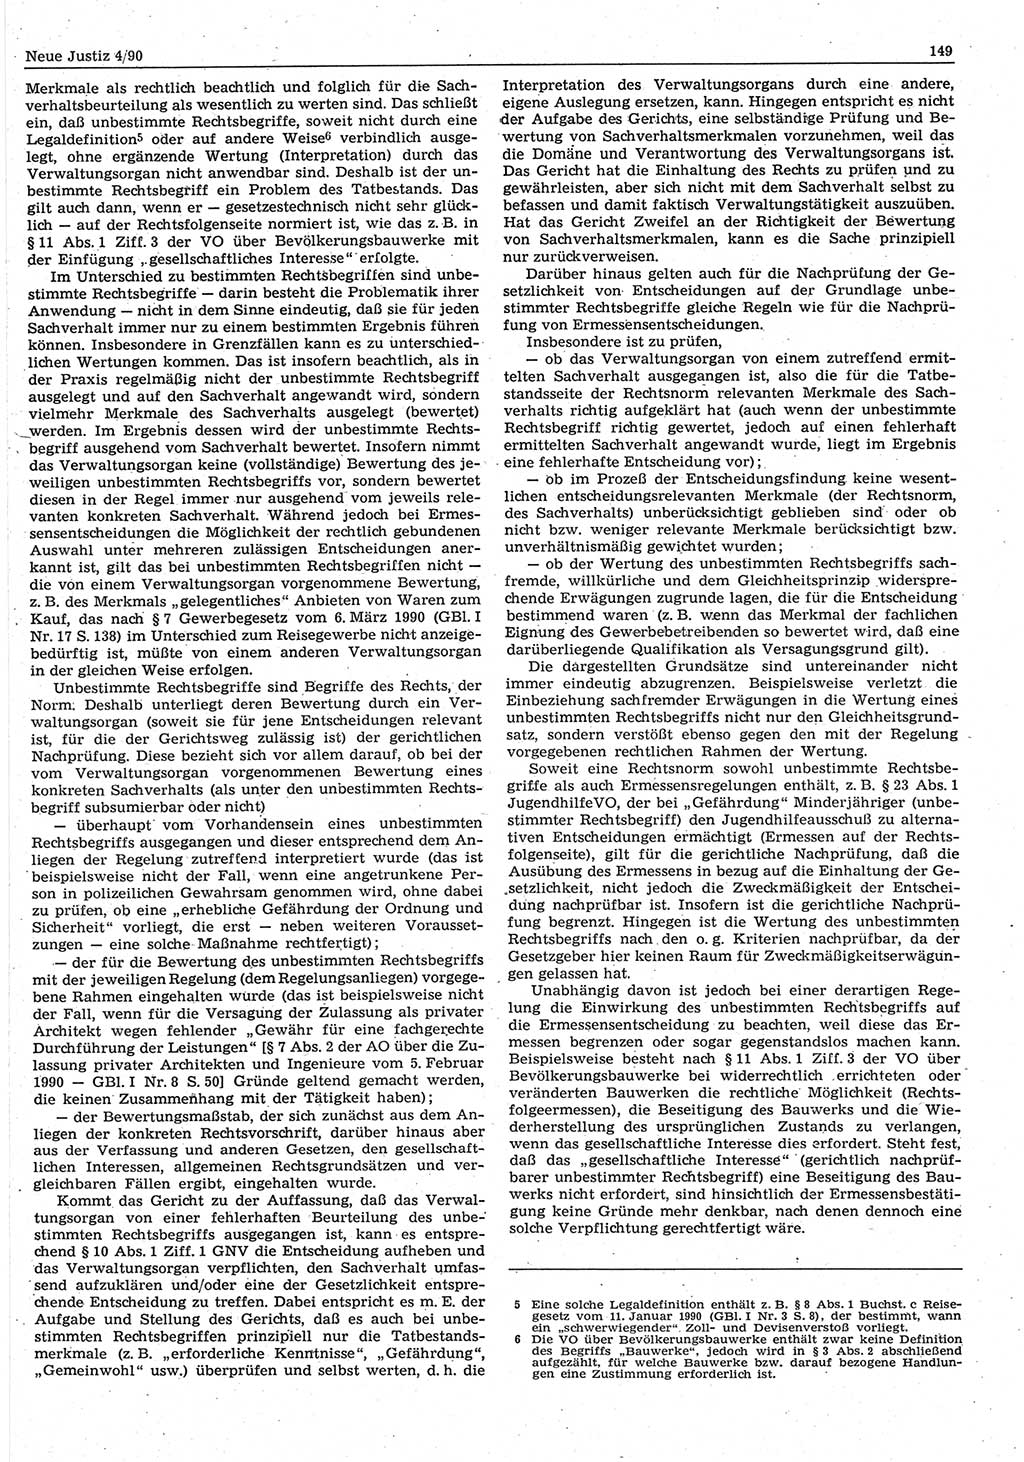 Neue Justiz (NJ), Zeitschrift für Rechtsetzung und Rechtsanwendung [Deutsche Demokratische Republik (DDR)], 44. Jahrgang 1990, Seite 149 (NJ DDR 1990, S. 149)